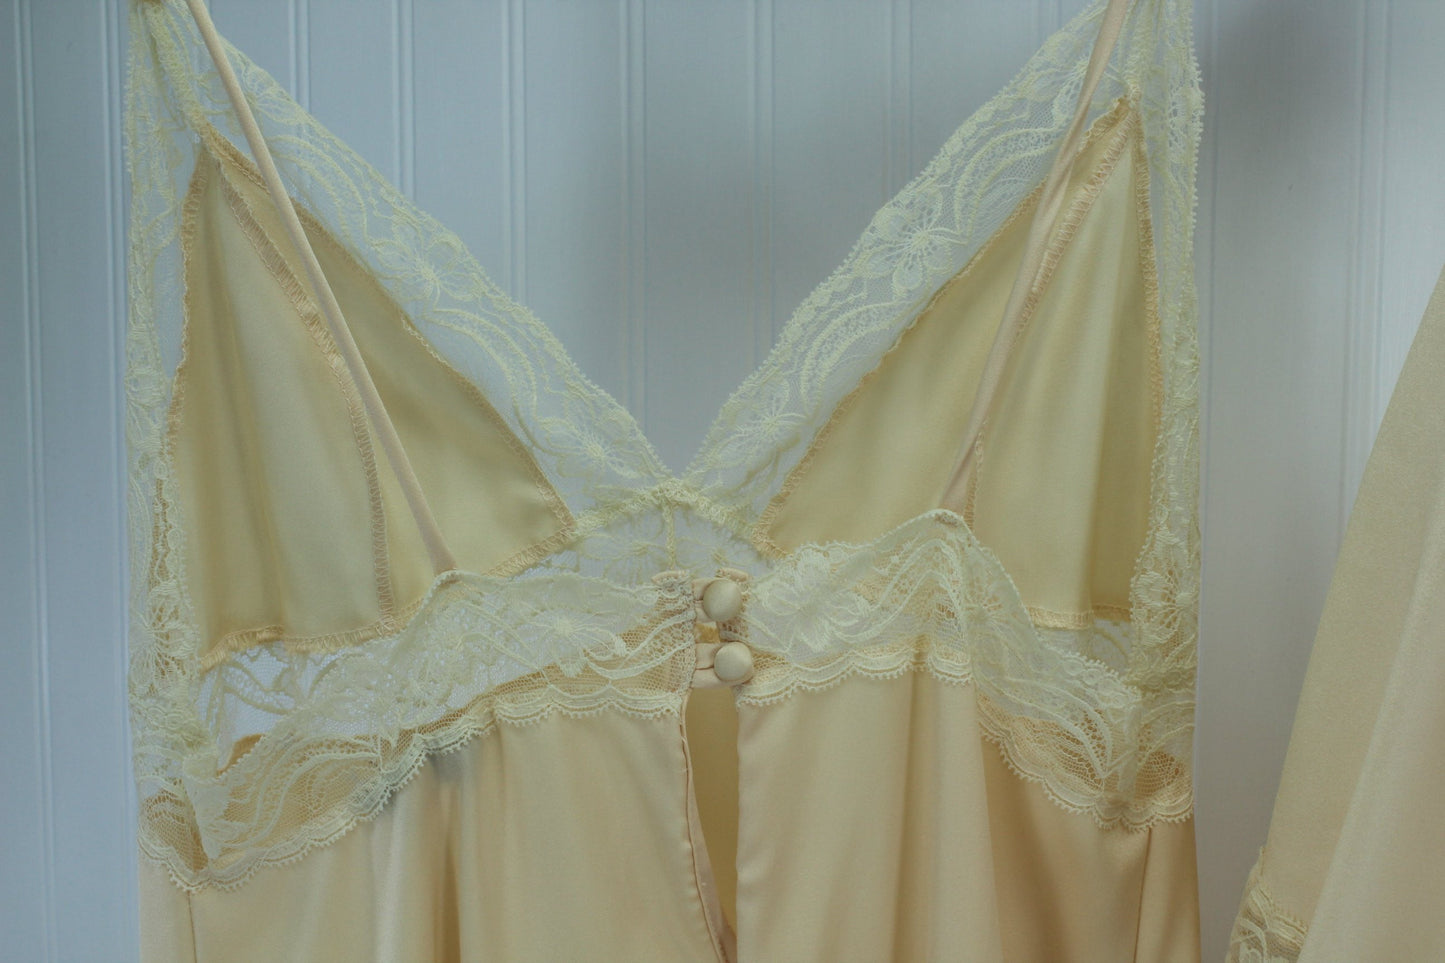 QUINTANNA Gown Peignoir Set  Nude Matching Lace Exquisite Trousseau Size M vintage